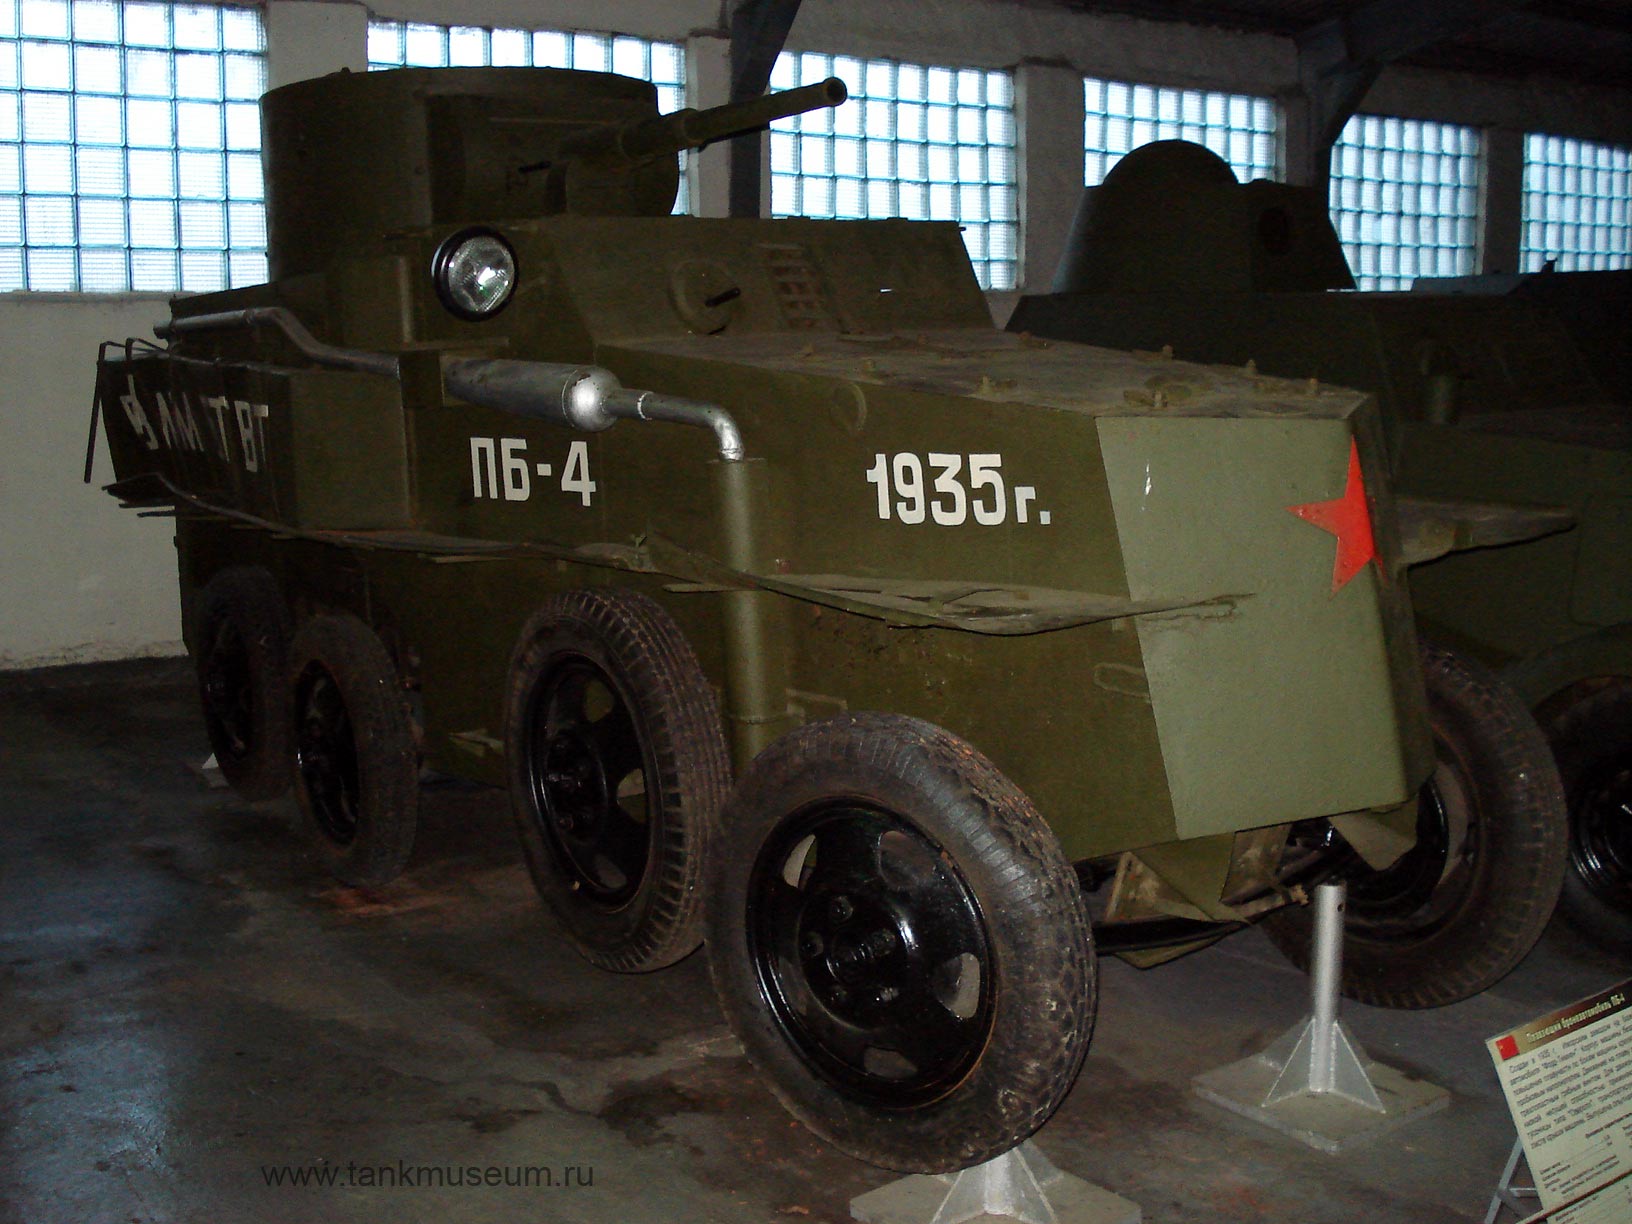 Amphibious armored vehicle PB-4, at Kubinka tank museim, archive photo